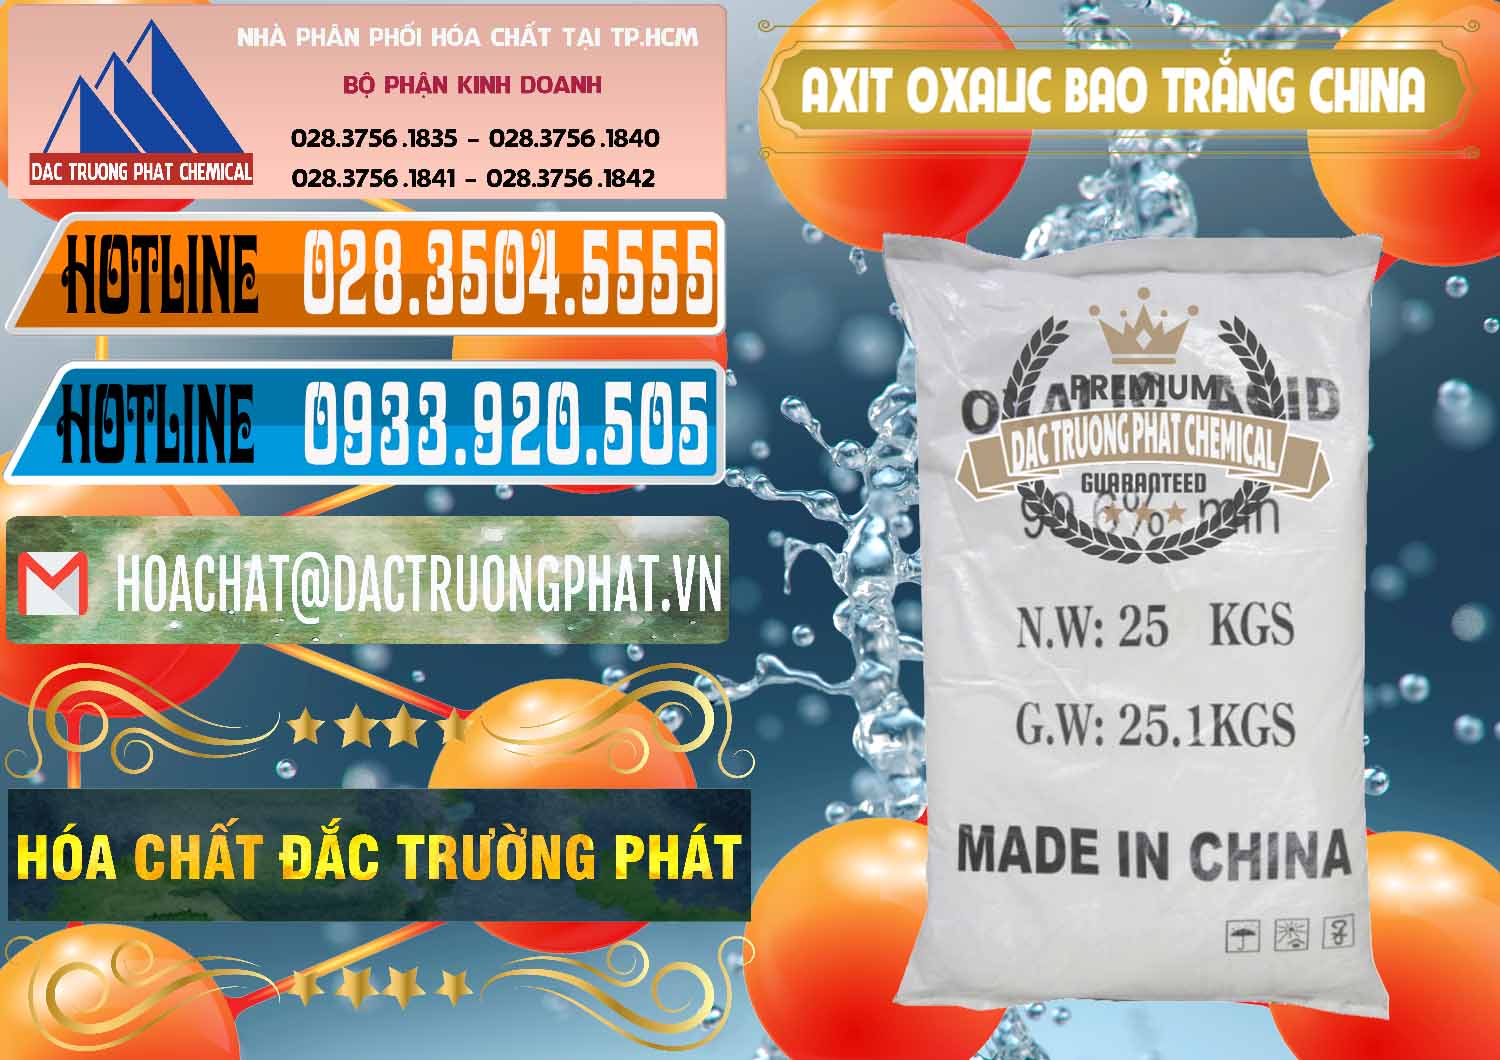 Cty chuyên bán & cung ứng Acid Oxalic – Axit Oxalic 99.6% Bao Trắng Trung Quốc China - 0270 - Chuyên phân phối ( nhập khẩu ) hóa chất tại TP.HCM - stmp.net